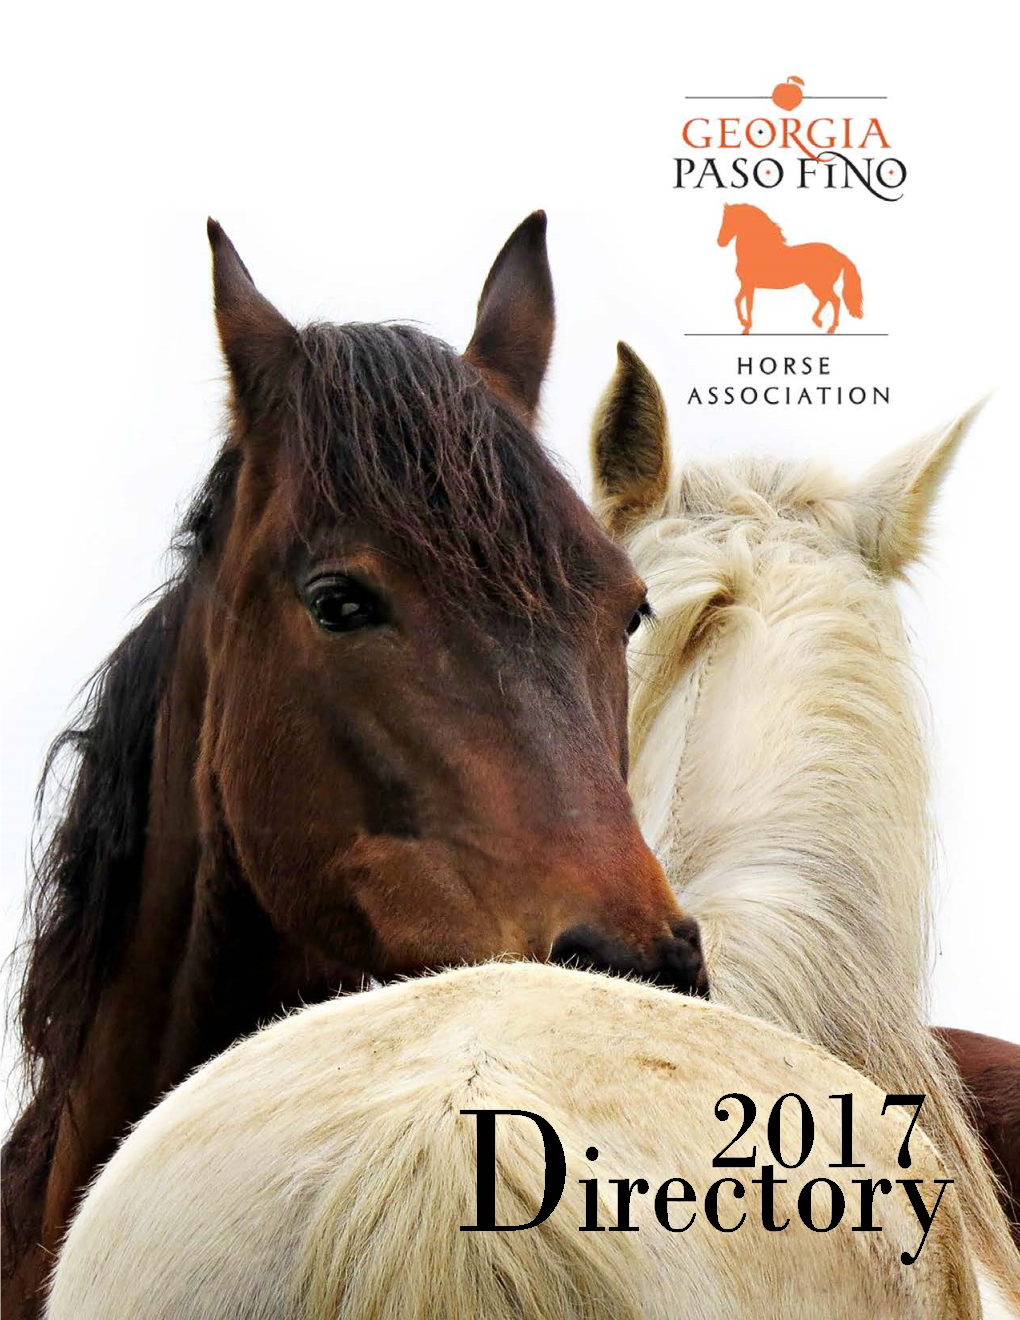 Anyone Who Rides Paso Fino Horses Has Experienced the Greatest